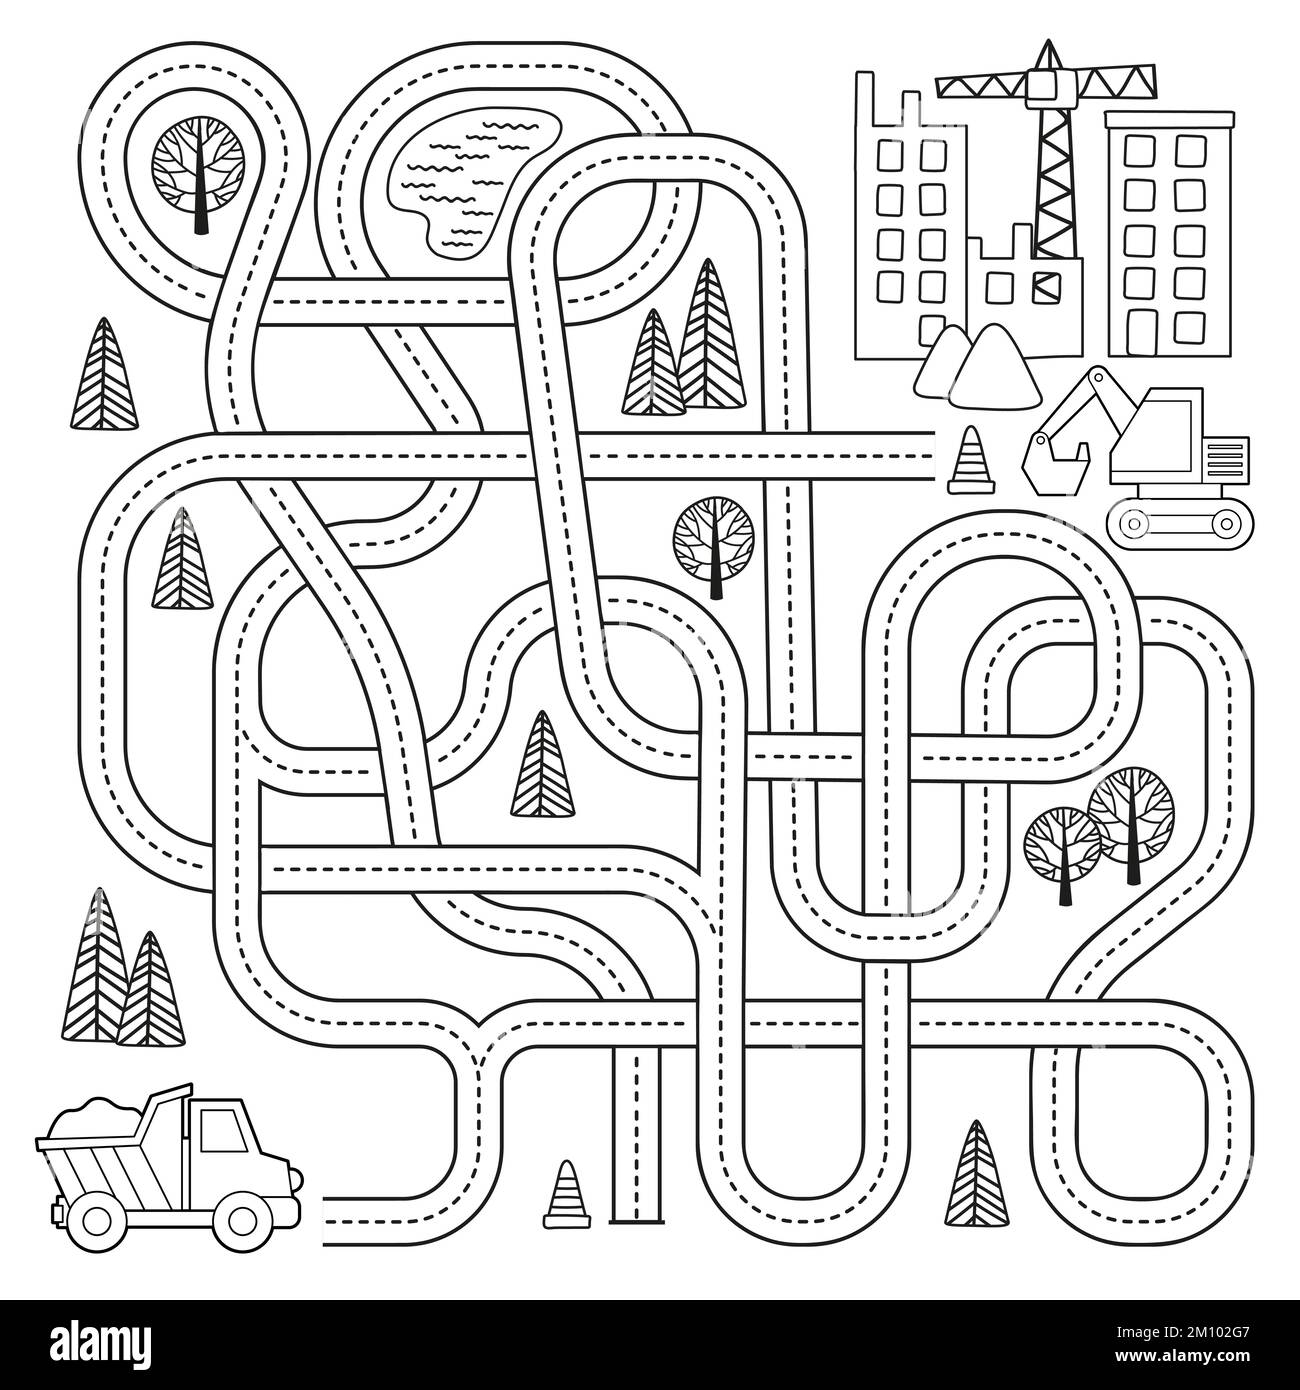 Labyrinth mit Fahrzeugen und verwickelten Straßen. Helfen Sie dem Stapler, die Baustelle zu erreichen. Vektor-Cartoon-Illustration Stock Vektor